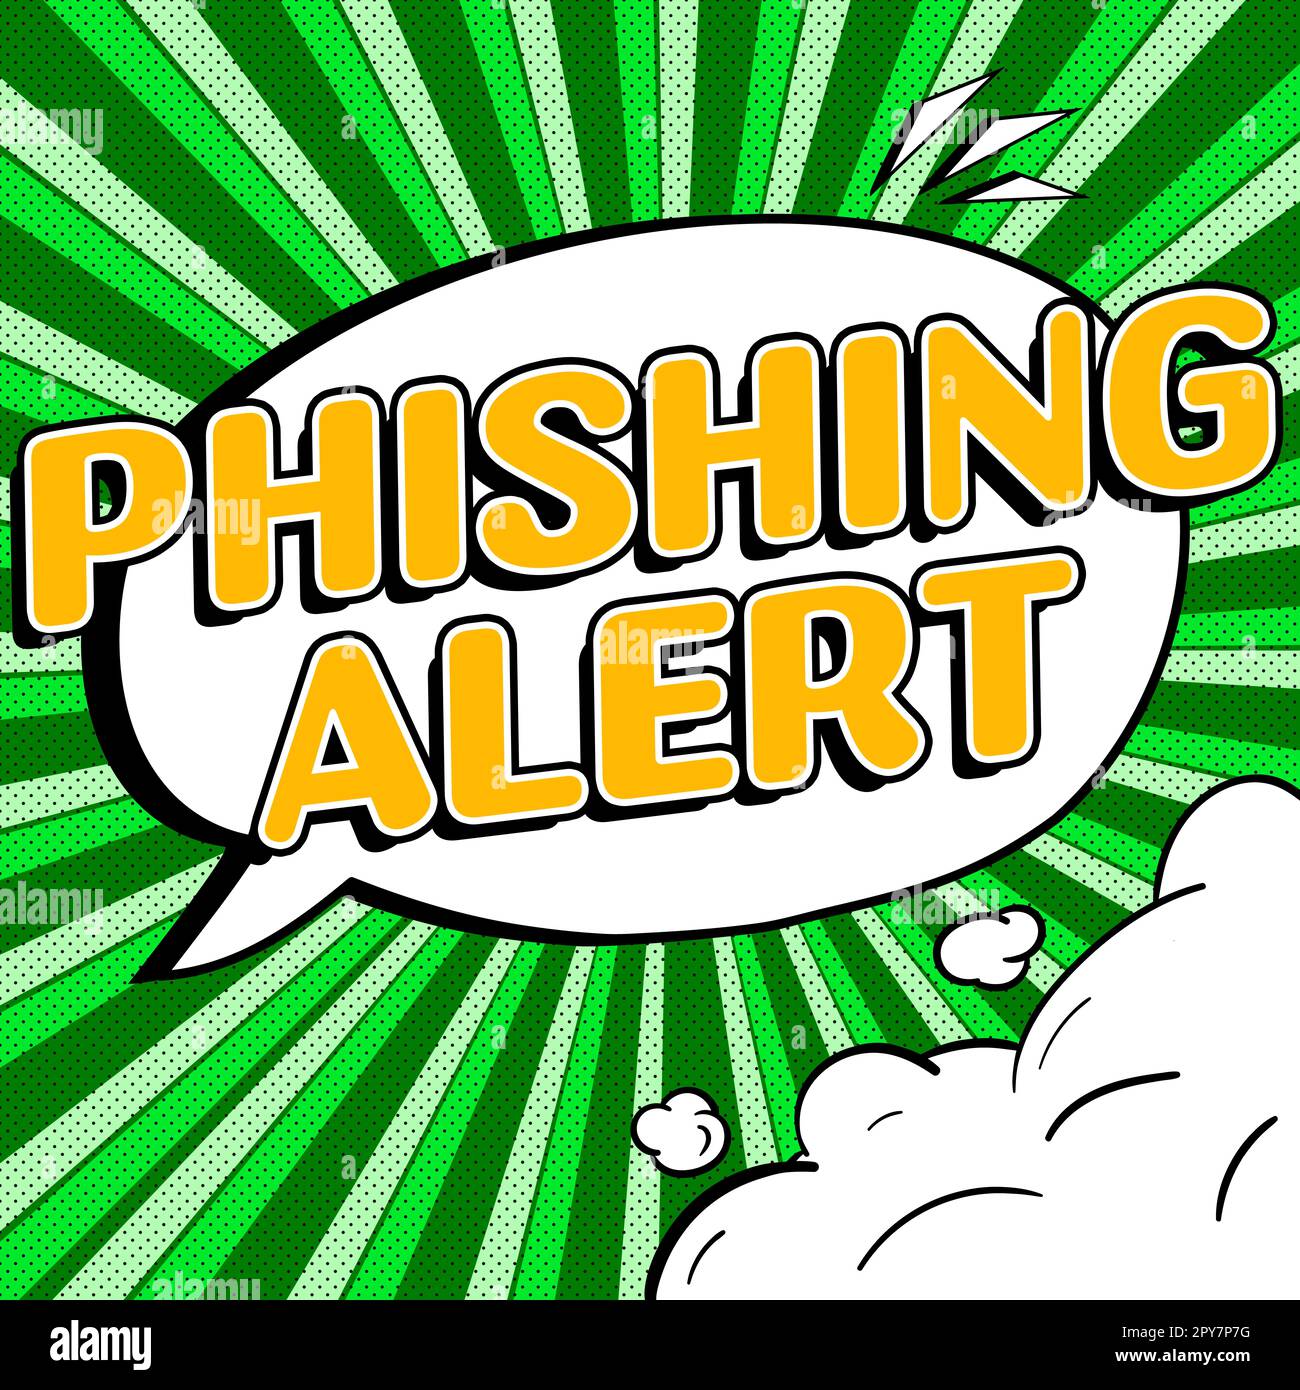 Textunterschrift mit Phishing-Alarm. Wort für "Kenntnis des betrügerischen Versuchs, an vertrauliche Informationen zu gelangen" Stockfoto